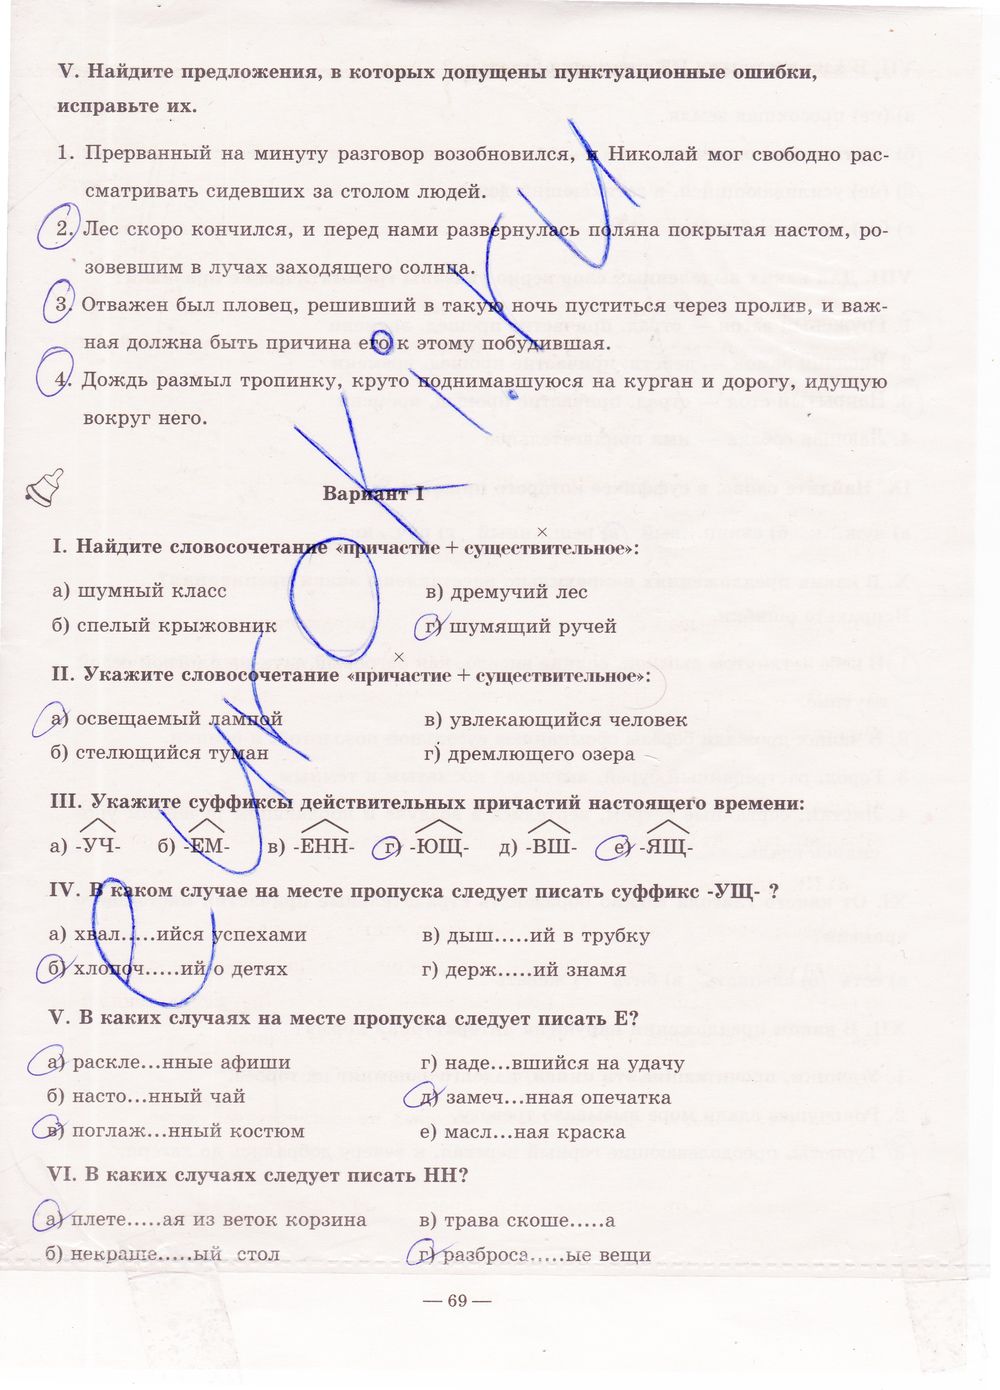 ГДЗ Русский язык 7 класс - стр. 69